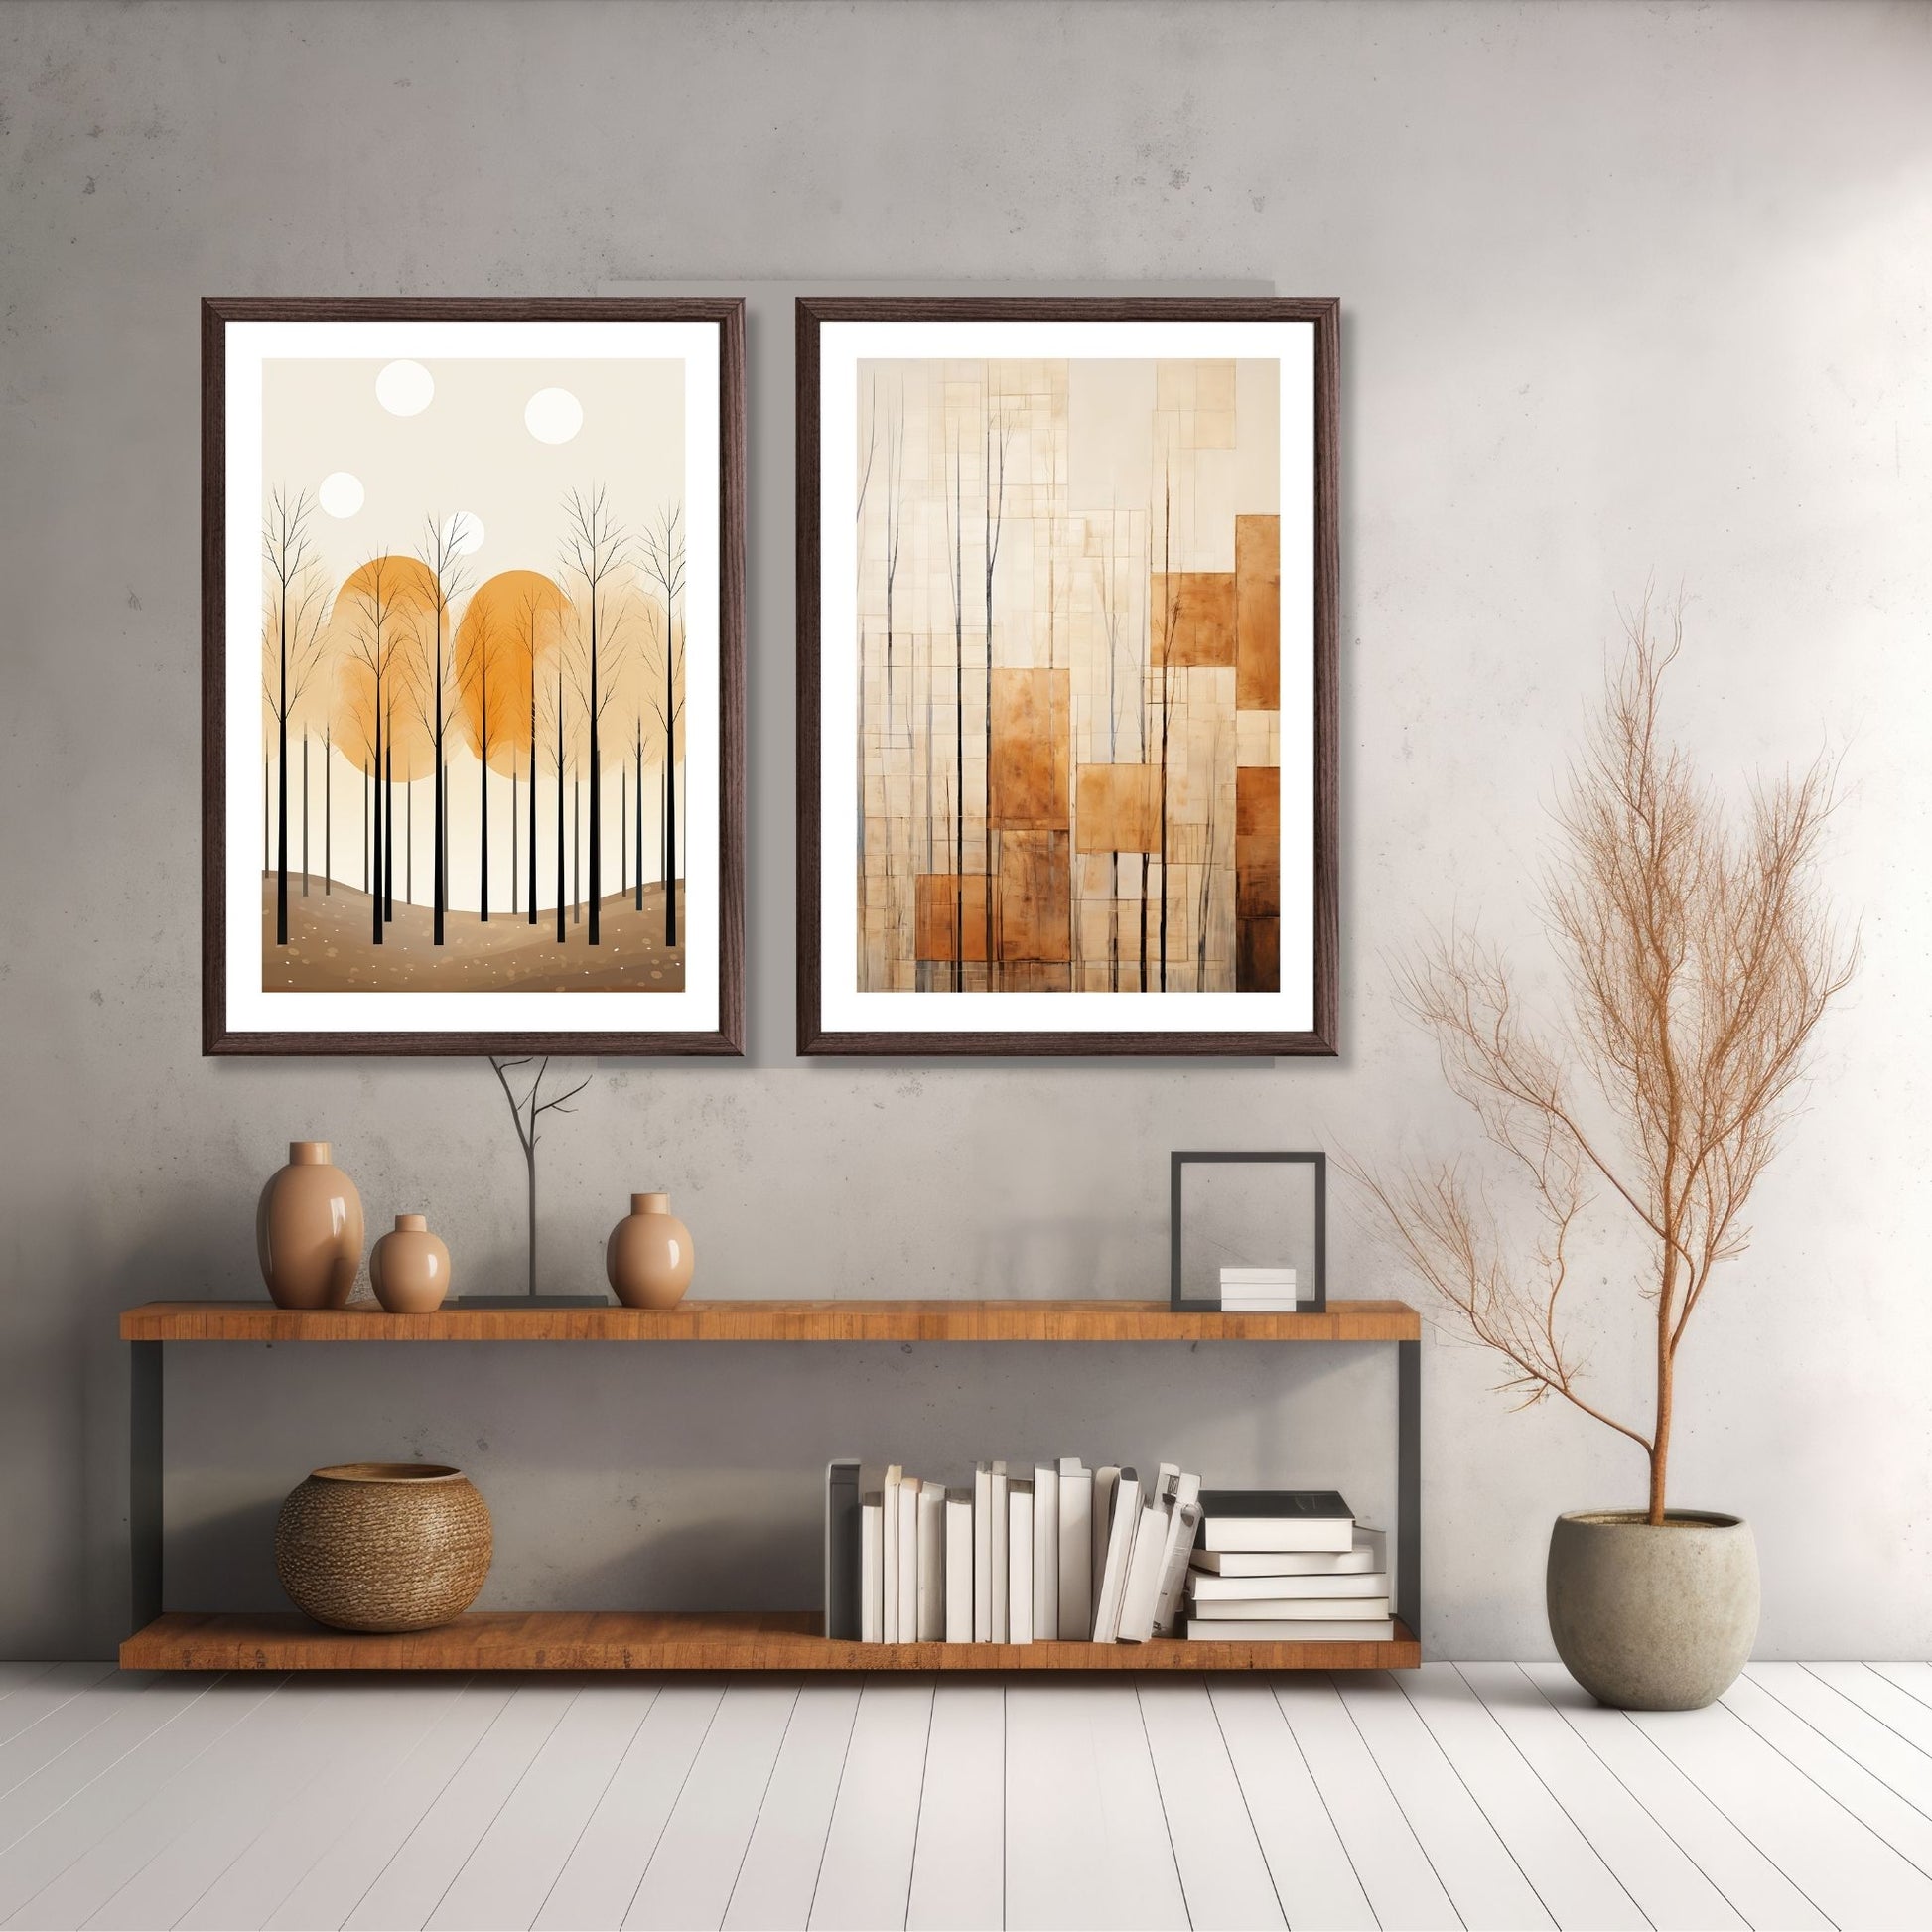 Abstract Forest - grafisk og abstrakt motiv av høye, slanke trær og skog i rust- og beige fargetoner. Illustrasjon av motiv 1 og 6 i brun ramme.